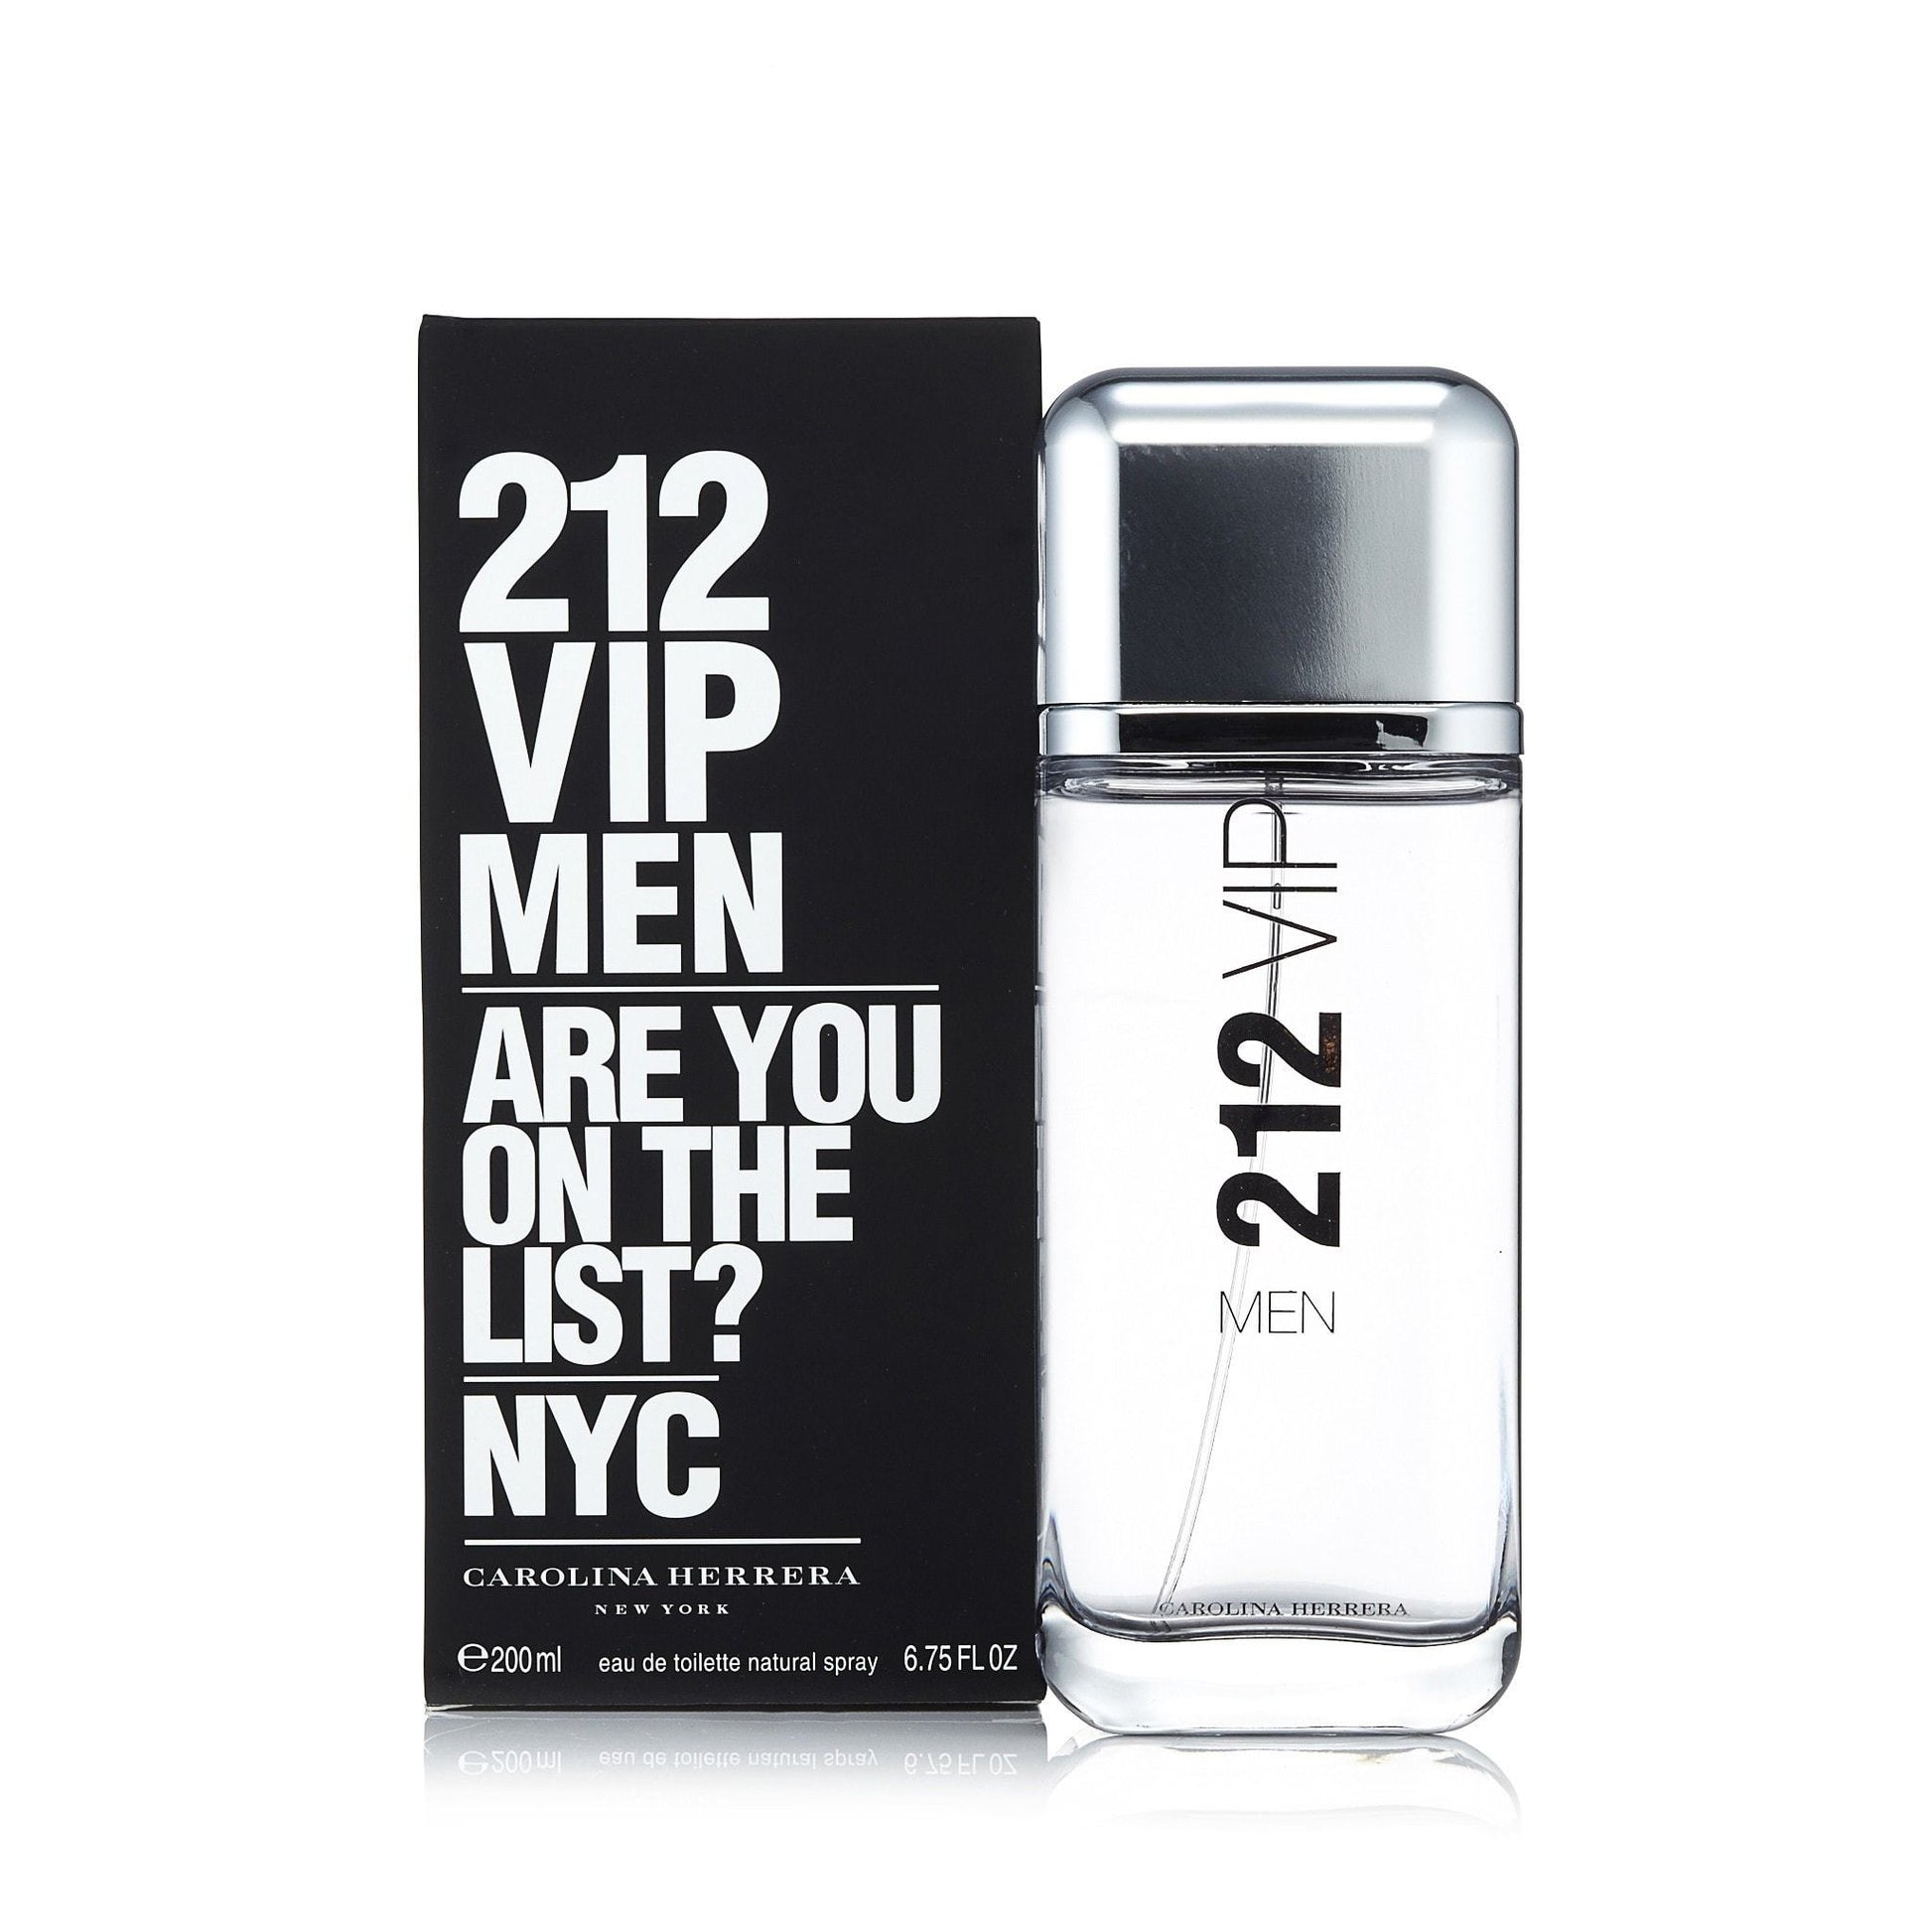 Carolina Herrera Men's 212 Eau De Toilette Spray - 6.75 fl oz bottle